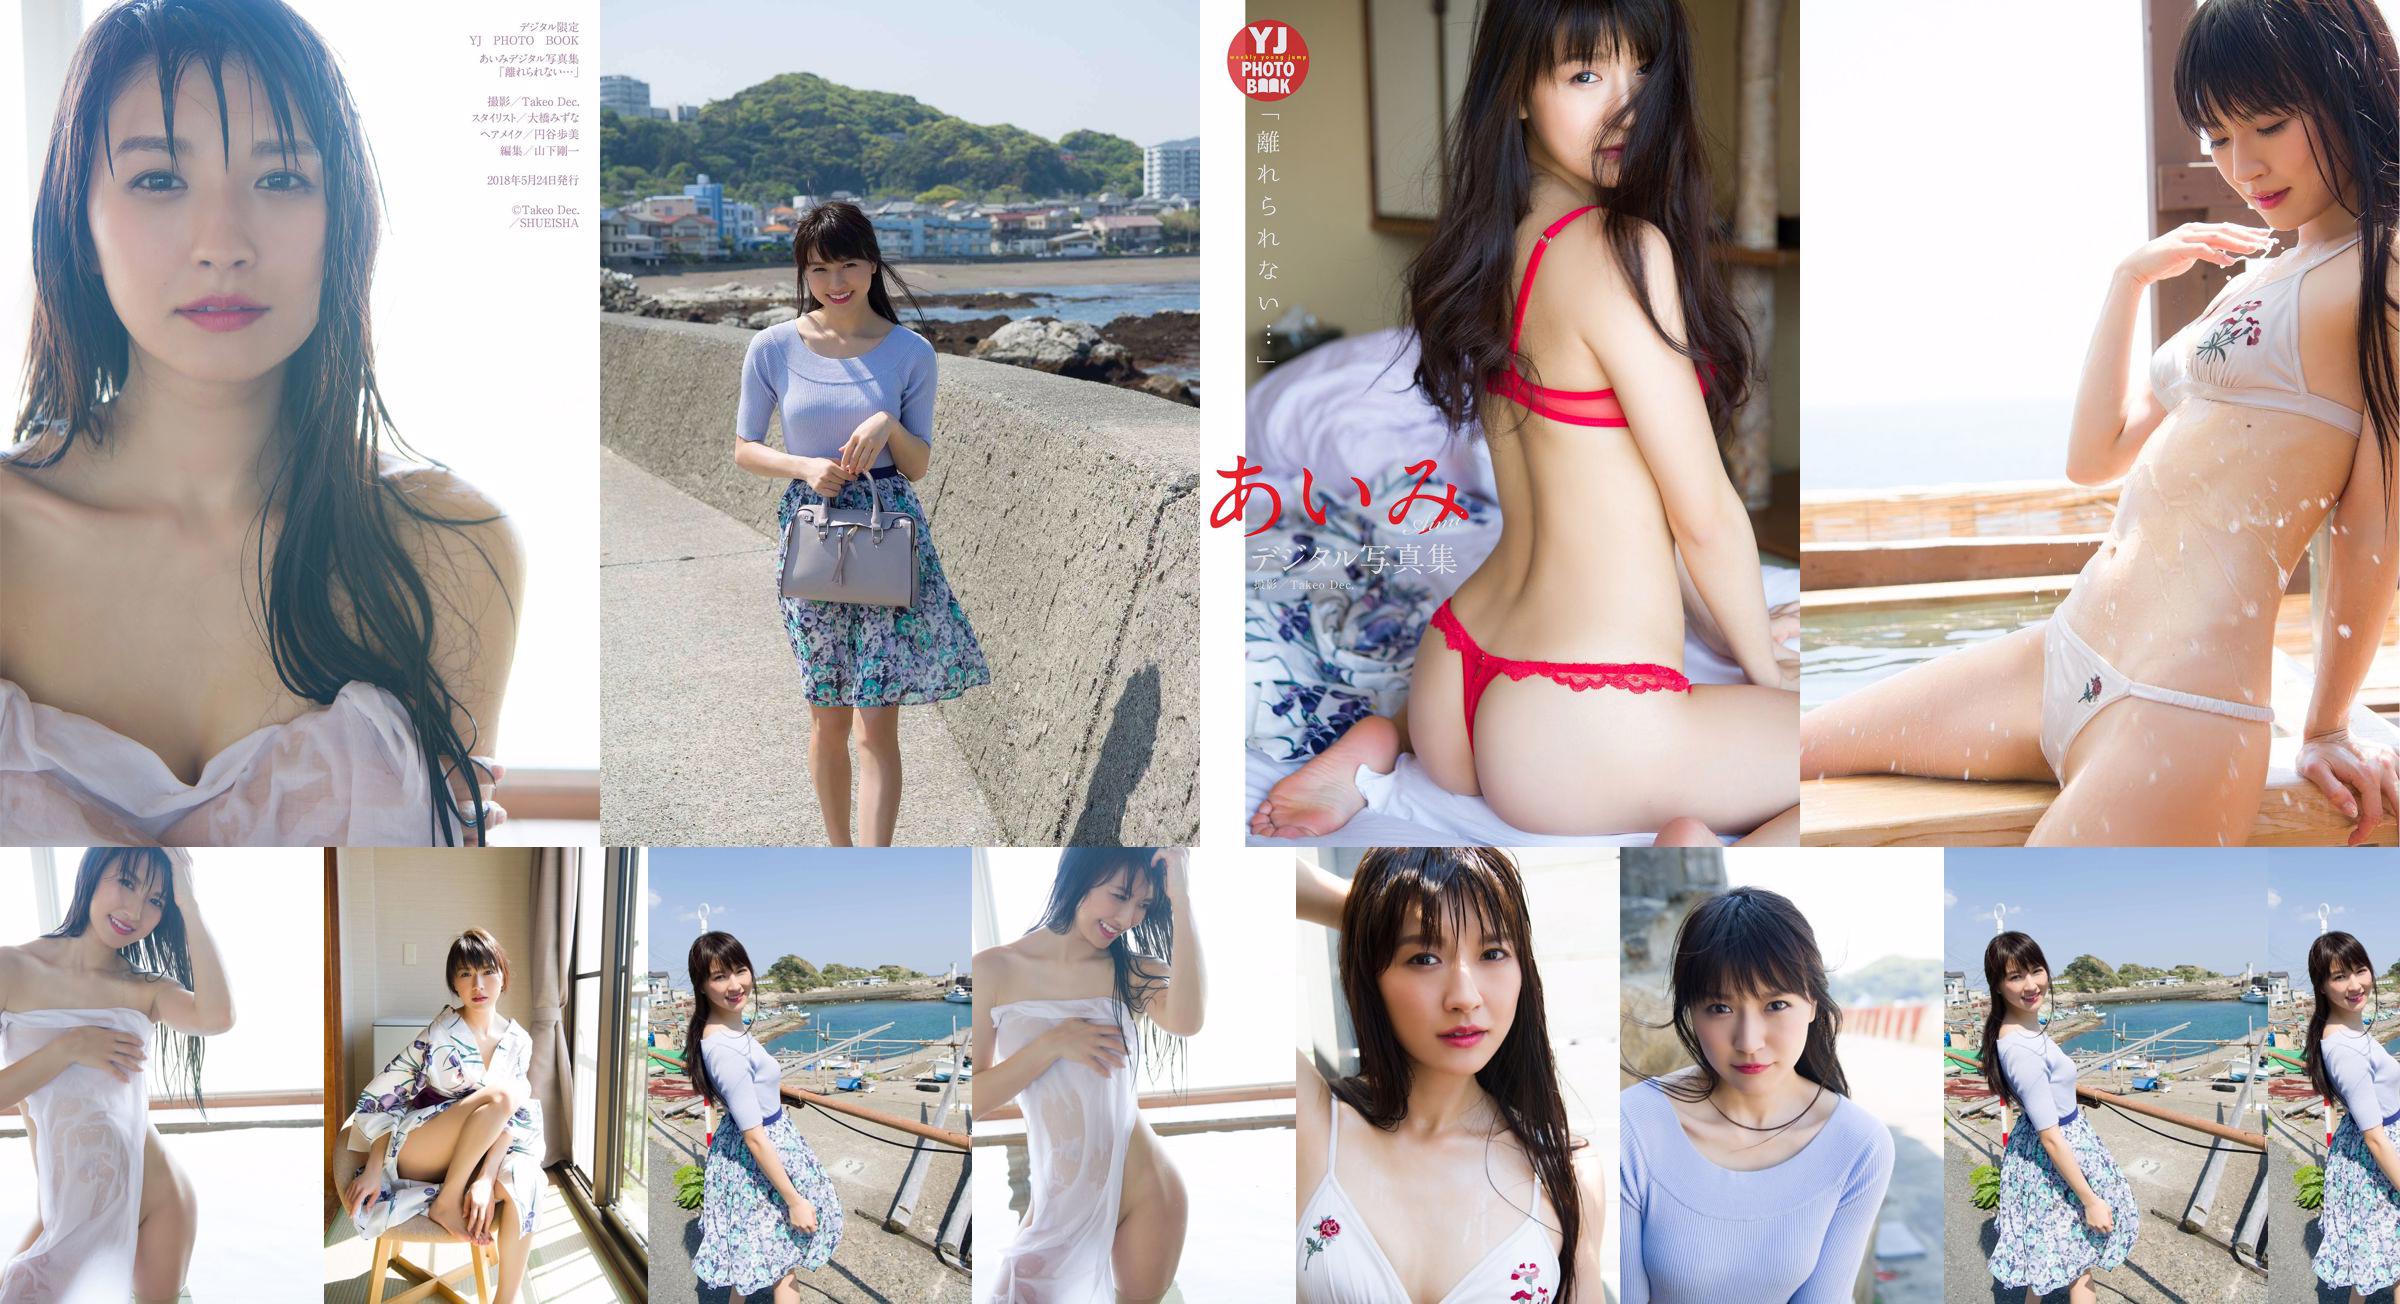 Aimi Nakano "Eu não posso sair..." [Livro de fotos digital limitado da YJ] No.bc943b Página 1